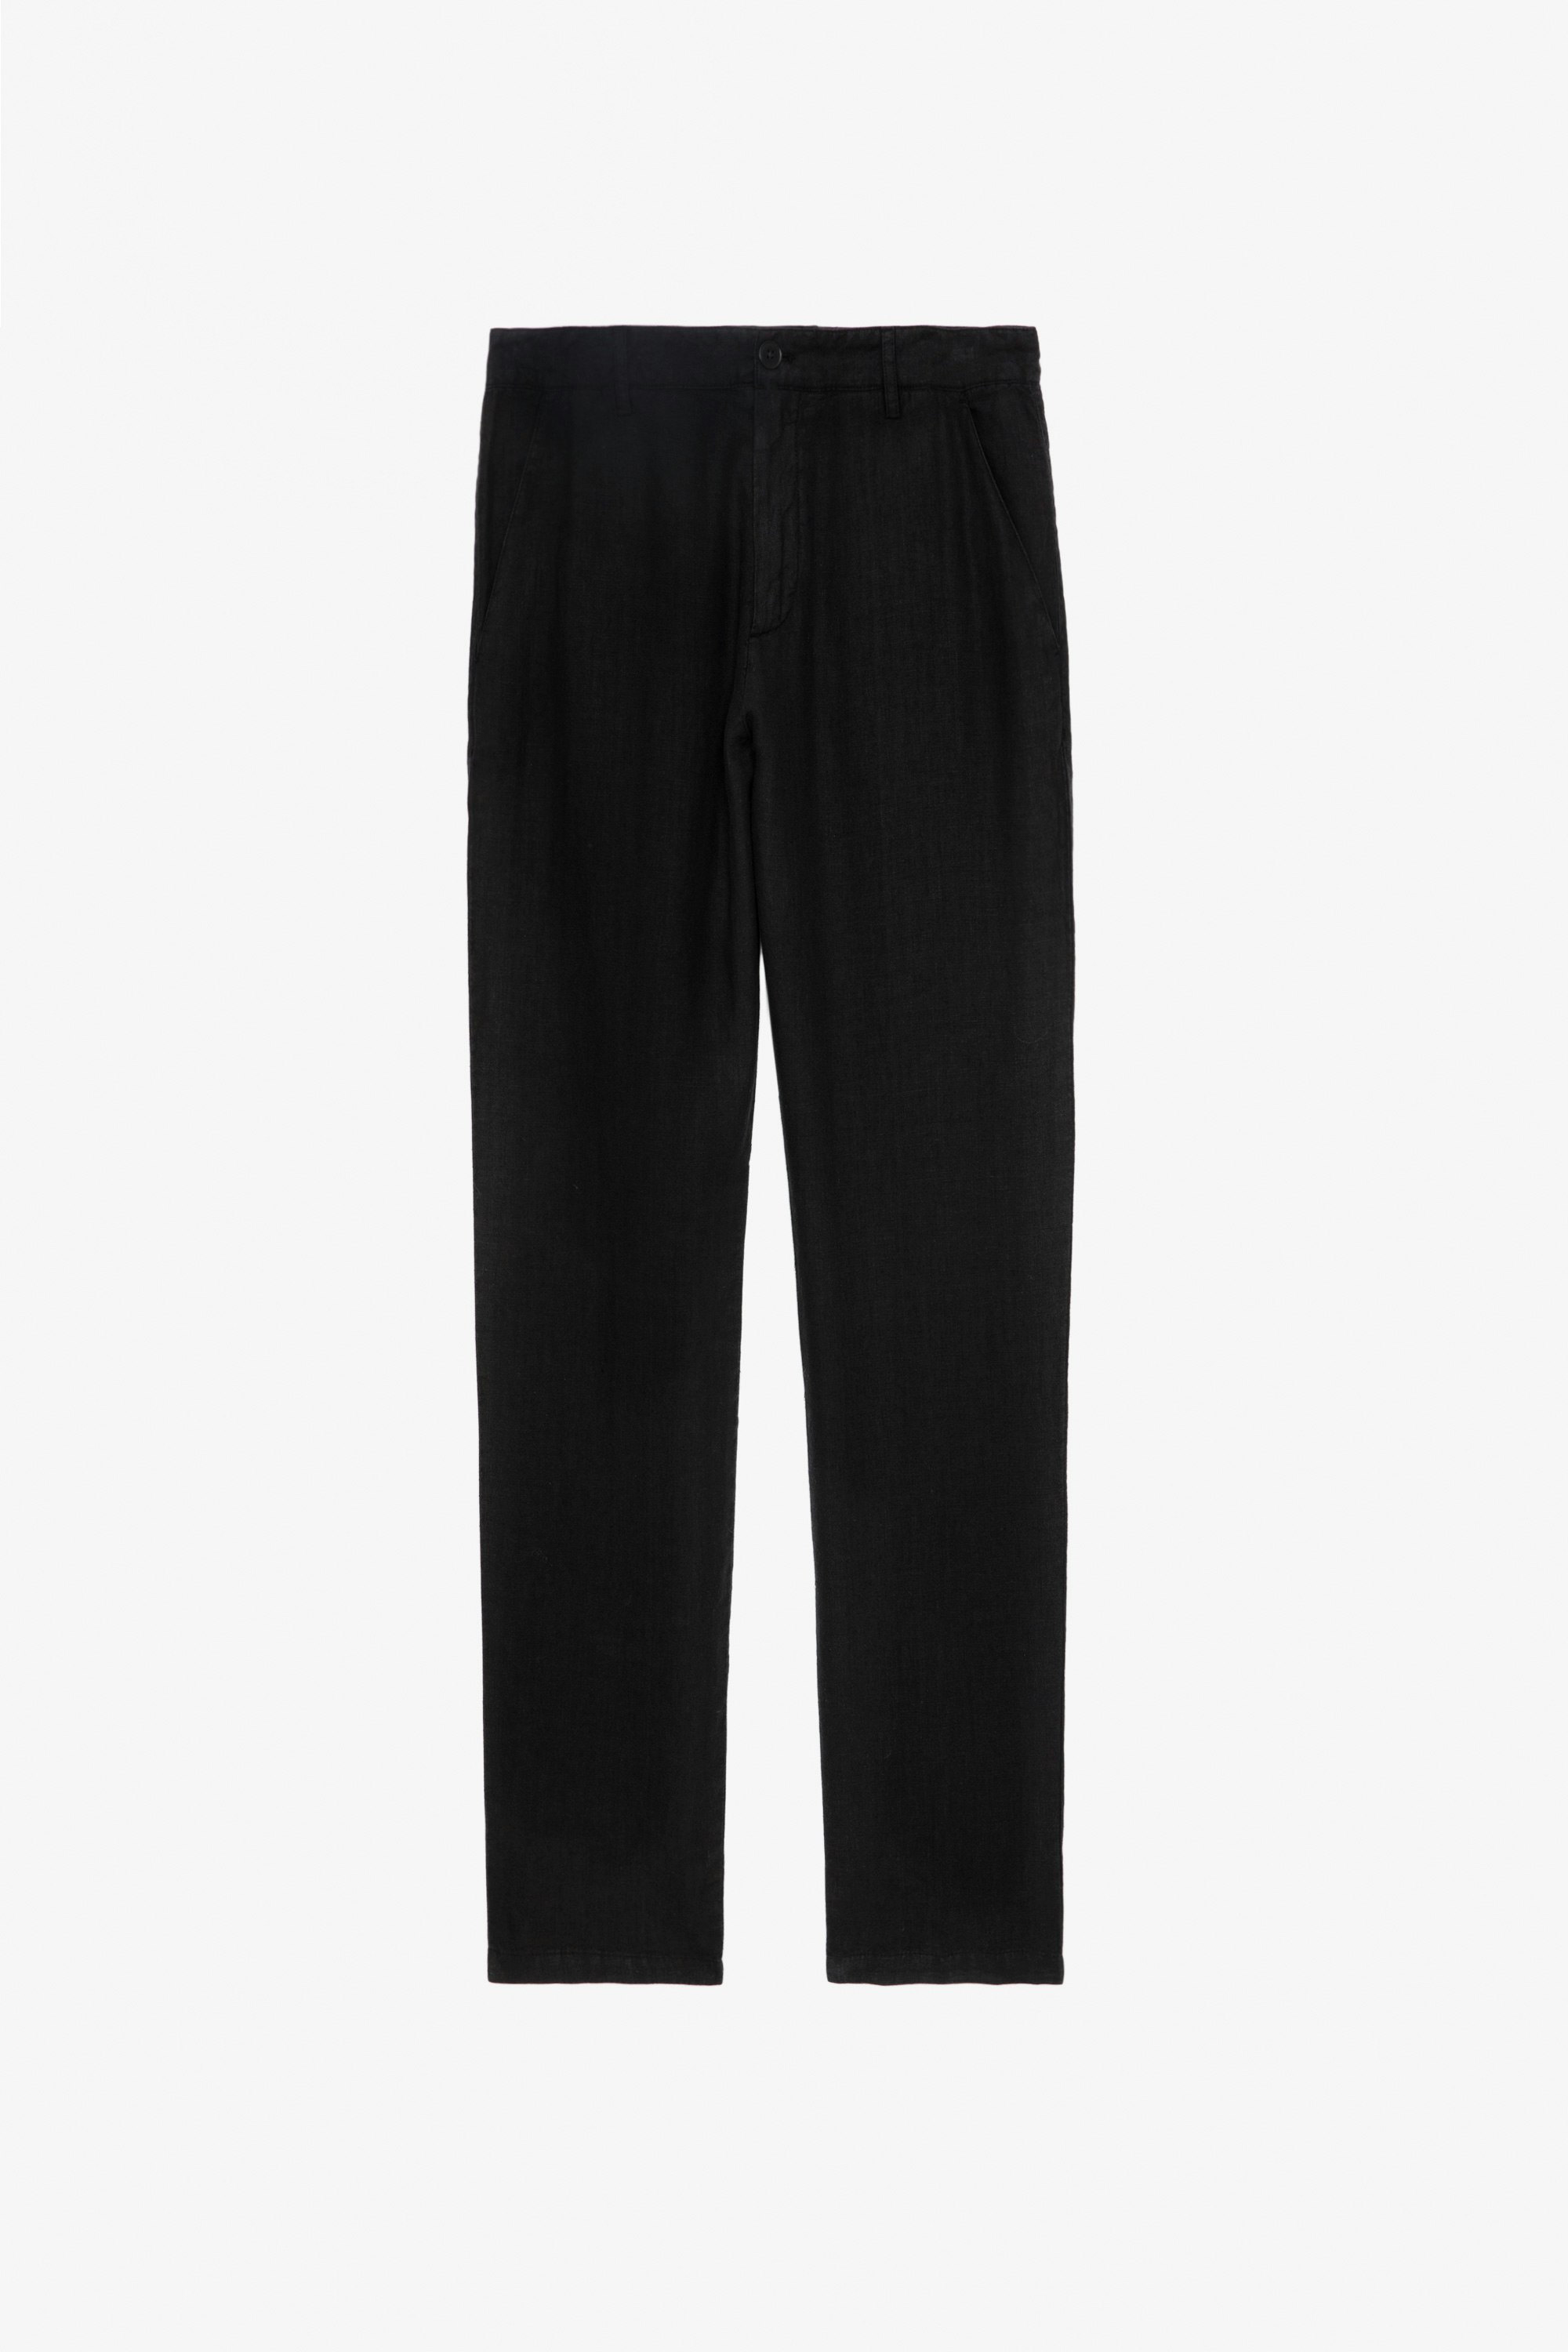 Pantalón de Lino Pierce - Pantalón negro de lino lavado con bolsillos.